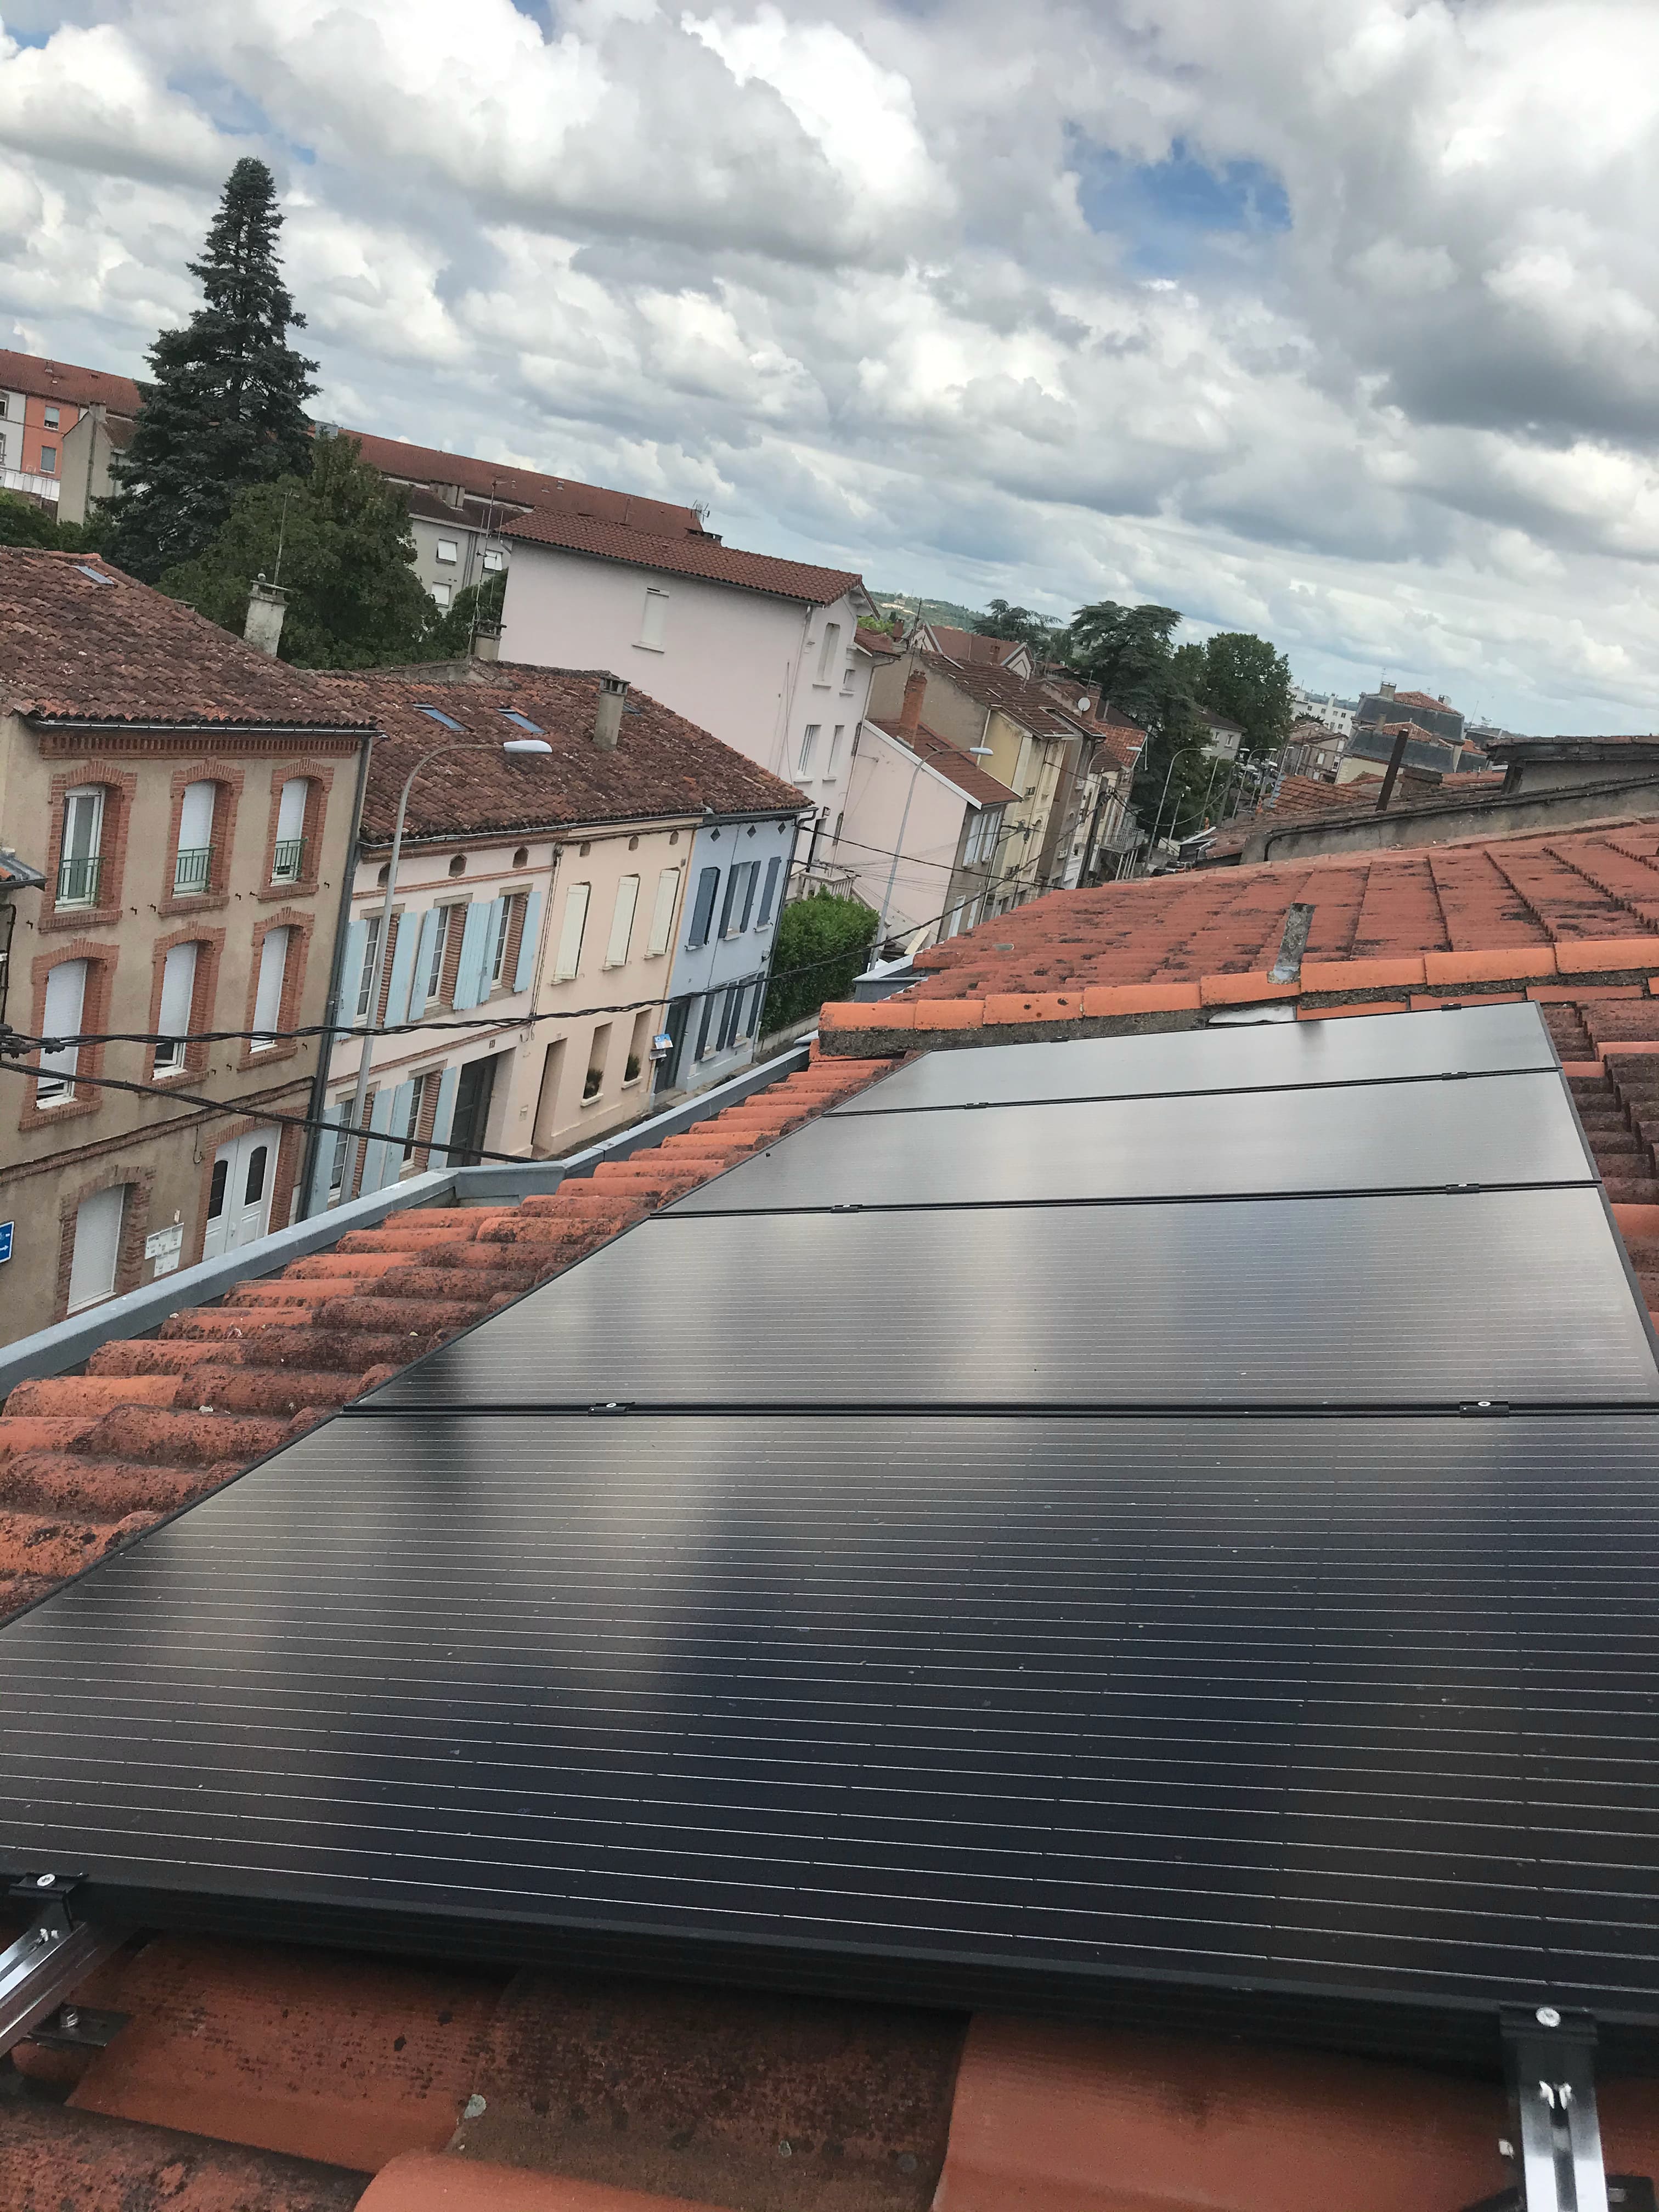 <span class="popup-mms-6">Installation de panneaux solaires sur toiture inclinée - 1600W</span>